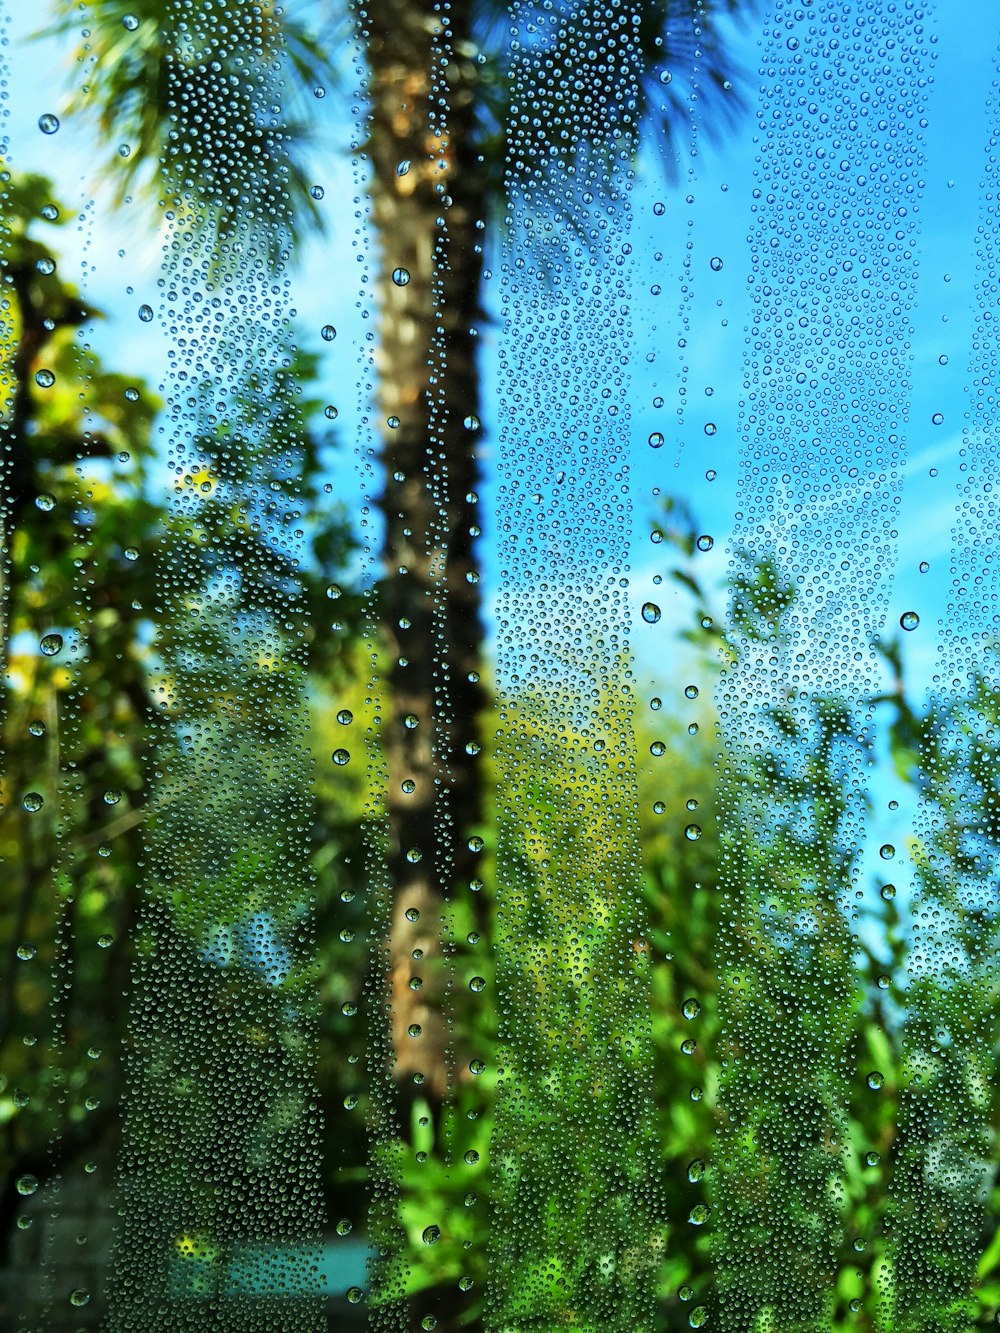 vidrio transparente con gotas de agua